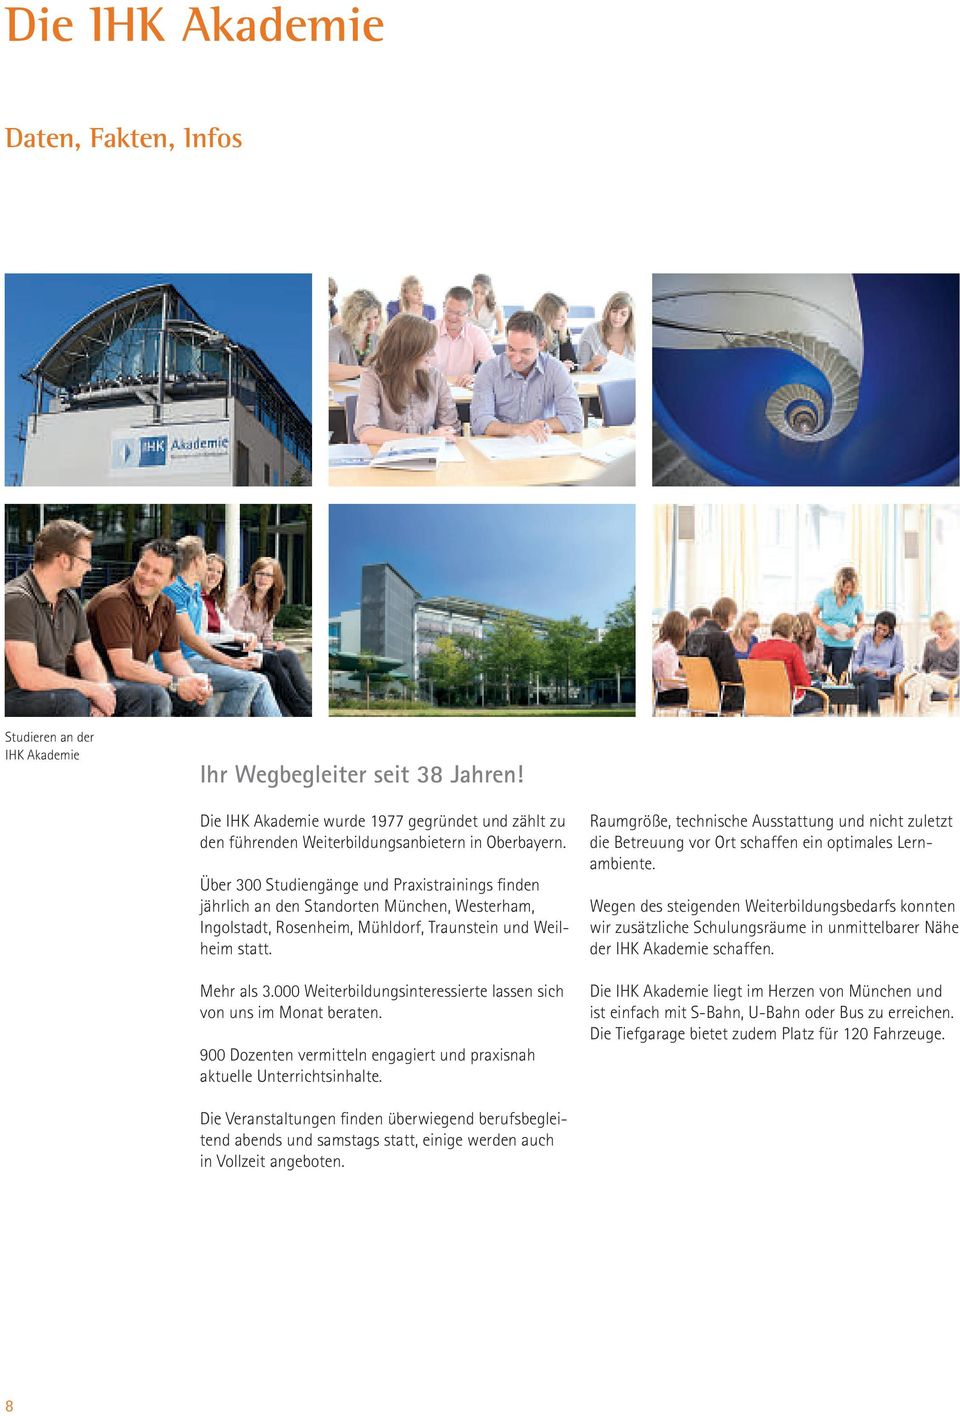 Über 300 Studiengänge und Praxistrainings finden jährlich an den Standorten München, Westerham, Ingolstadt, Rosenheim, Mühldorf, Traunstein und Weilheim statt. Mehr als 3.